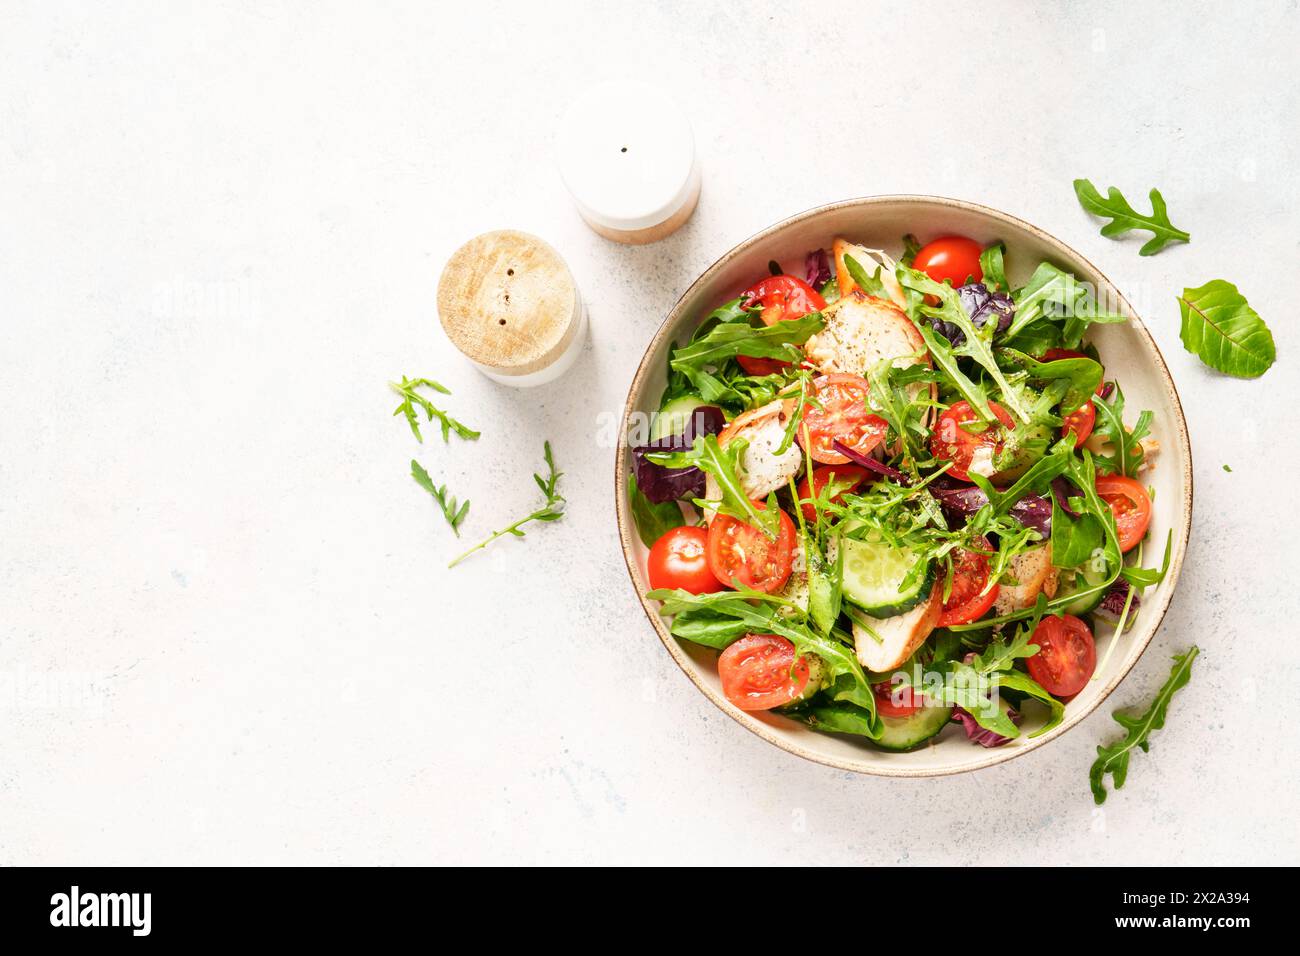 Salade verte avec poitrine de poulet cuite au four, feuilles de salade fraîches et légumes. Vue de dessus sur fond blanc. Banque D'Images